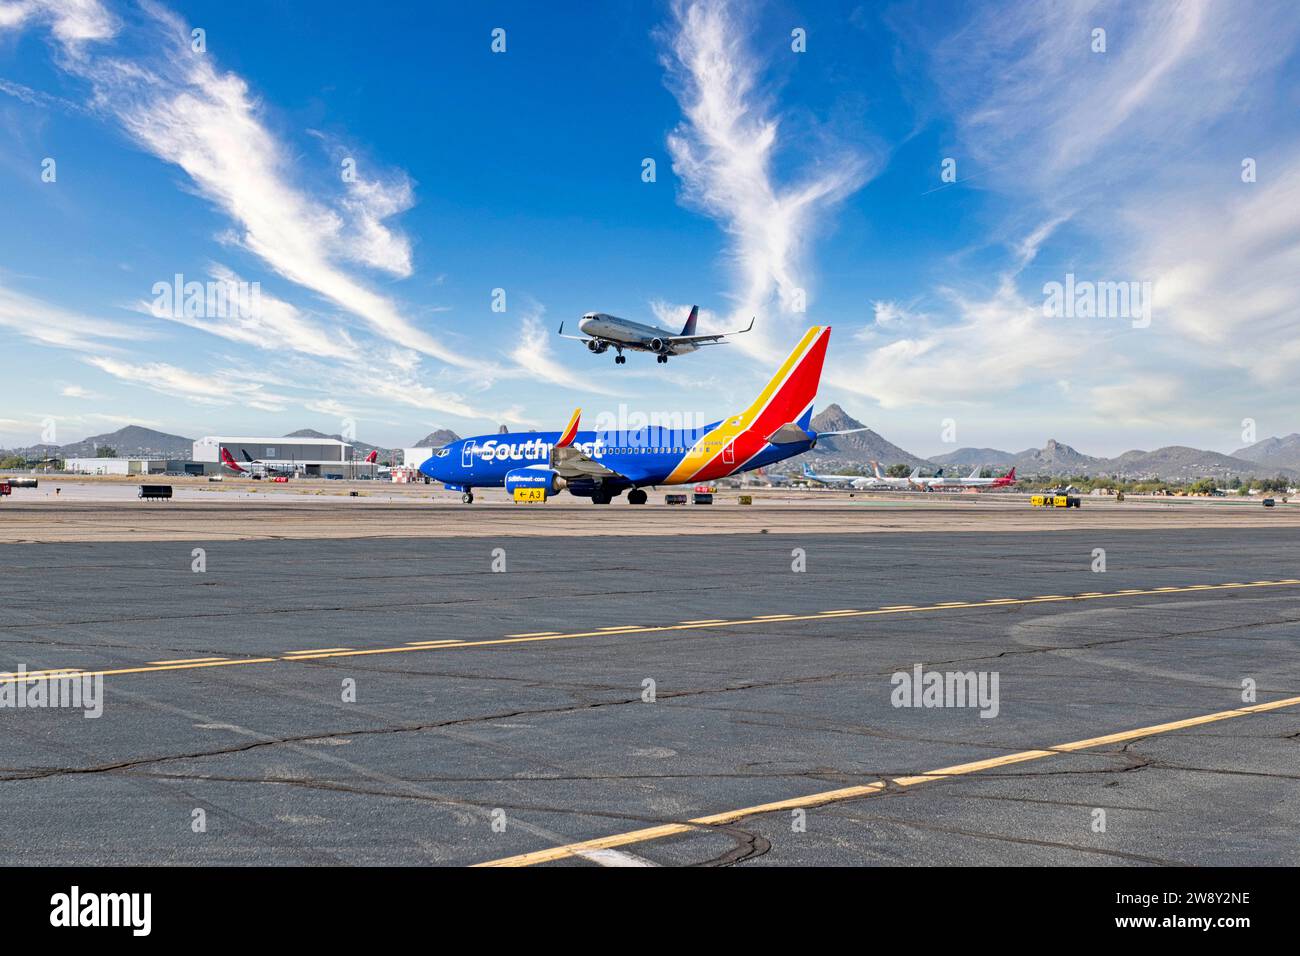 Le Boeing 737 du sud-ouest attend l'autorisation de pénétrer sur la piste active de l'aéroport international de Tucson en Arizona Banque D'Images